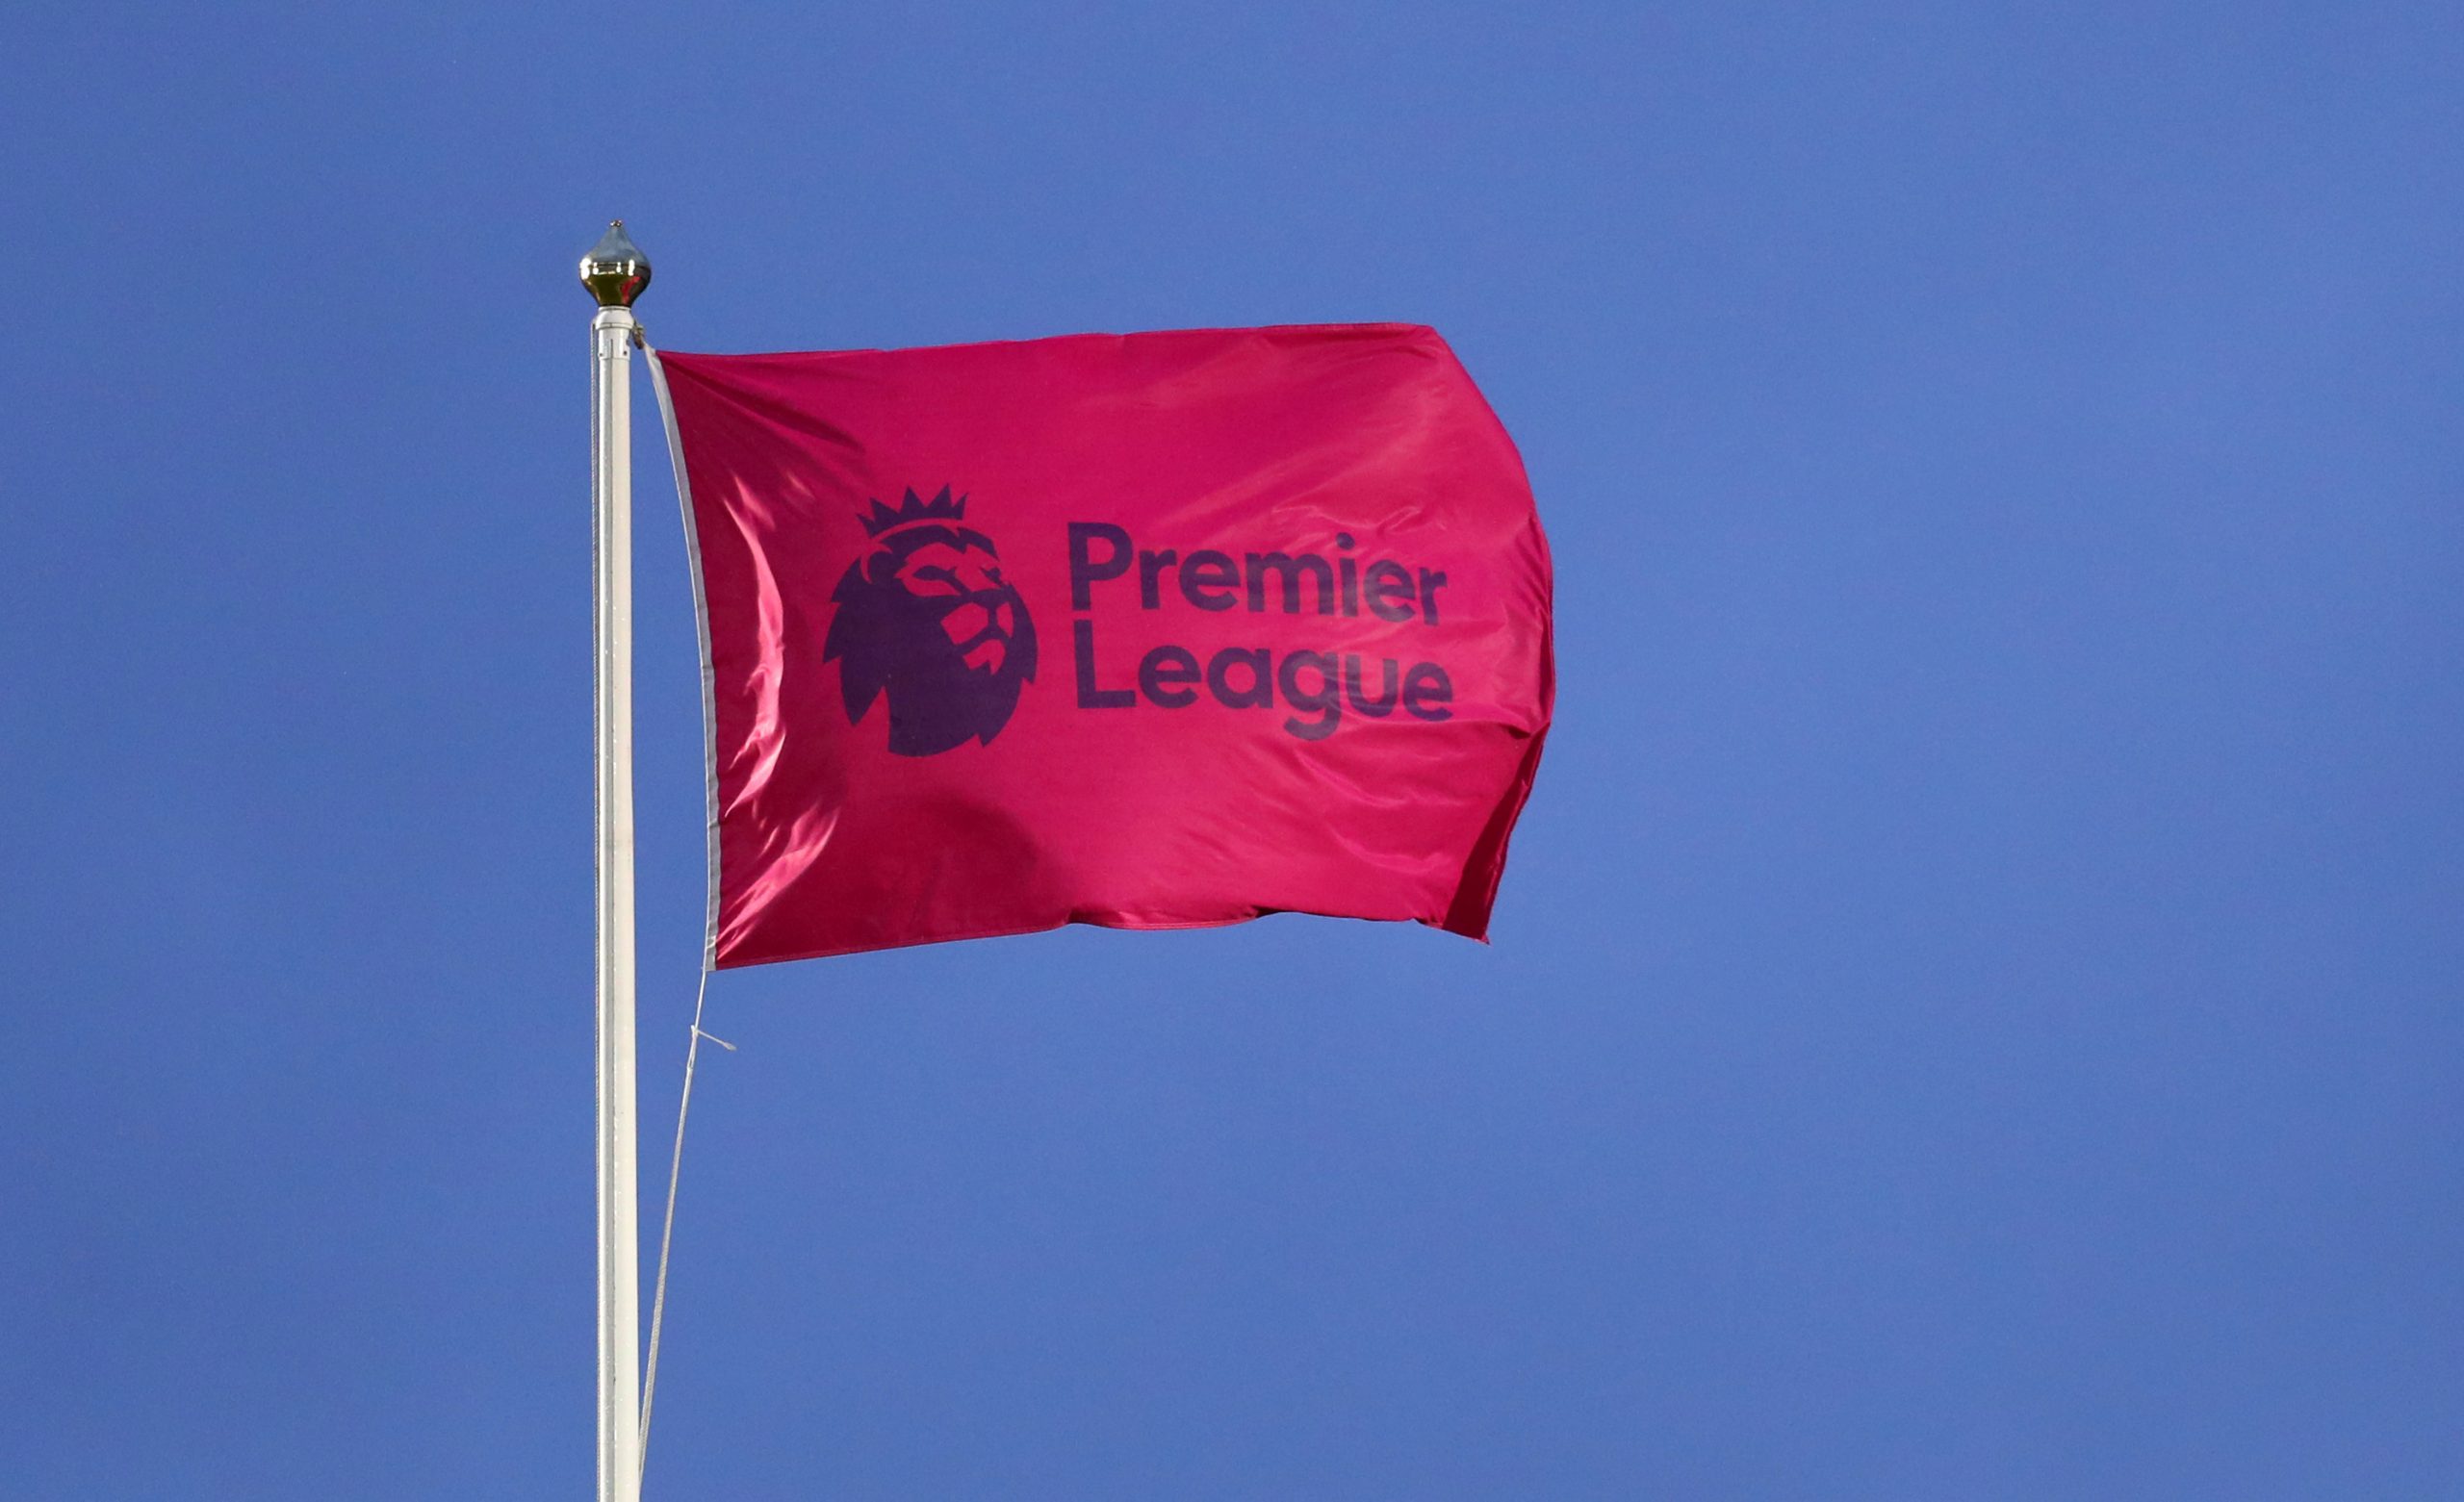  Premier League confirmó caso de Covid-19 en nueva ronda de test